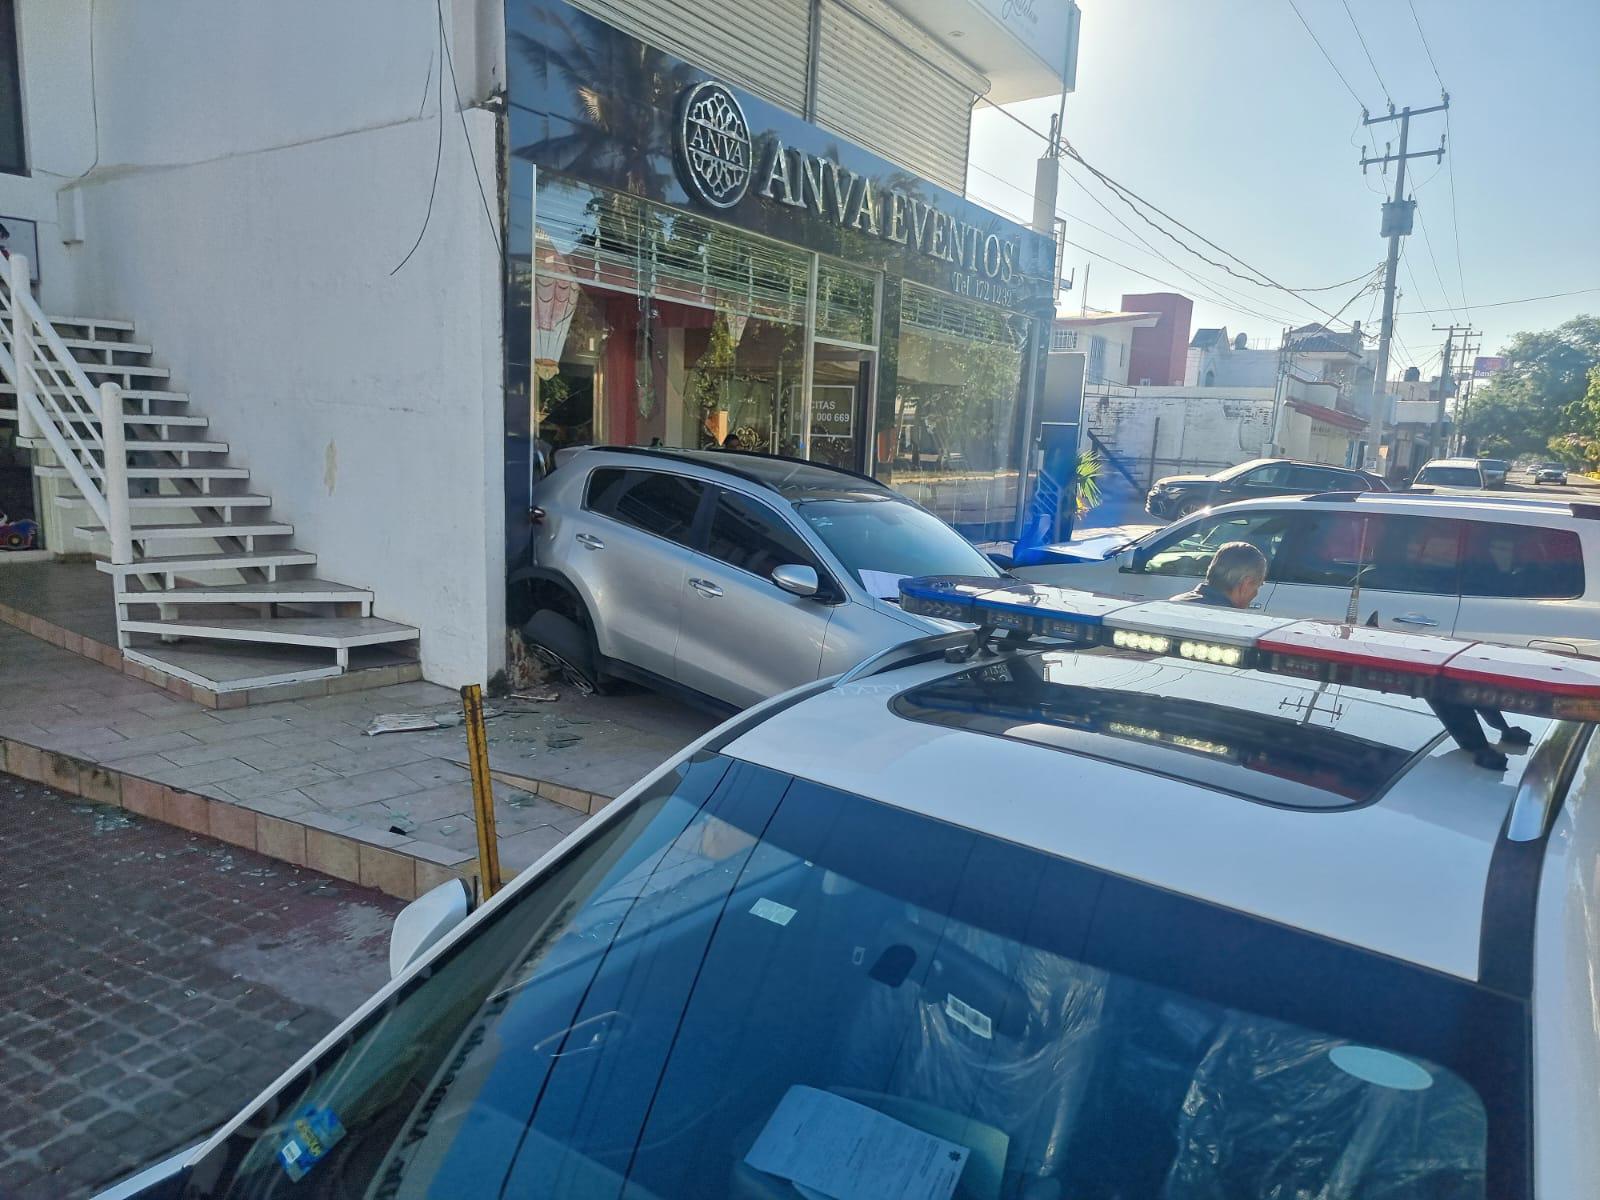 $!Carambola entre 6 vehículos daña fachada de local comercial en Culiacán